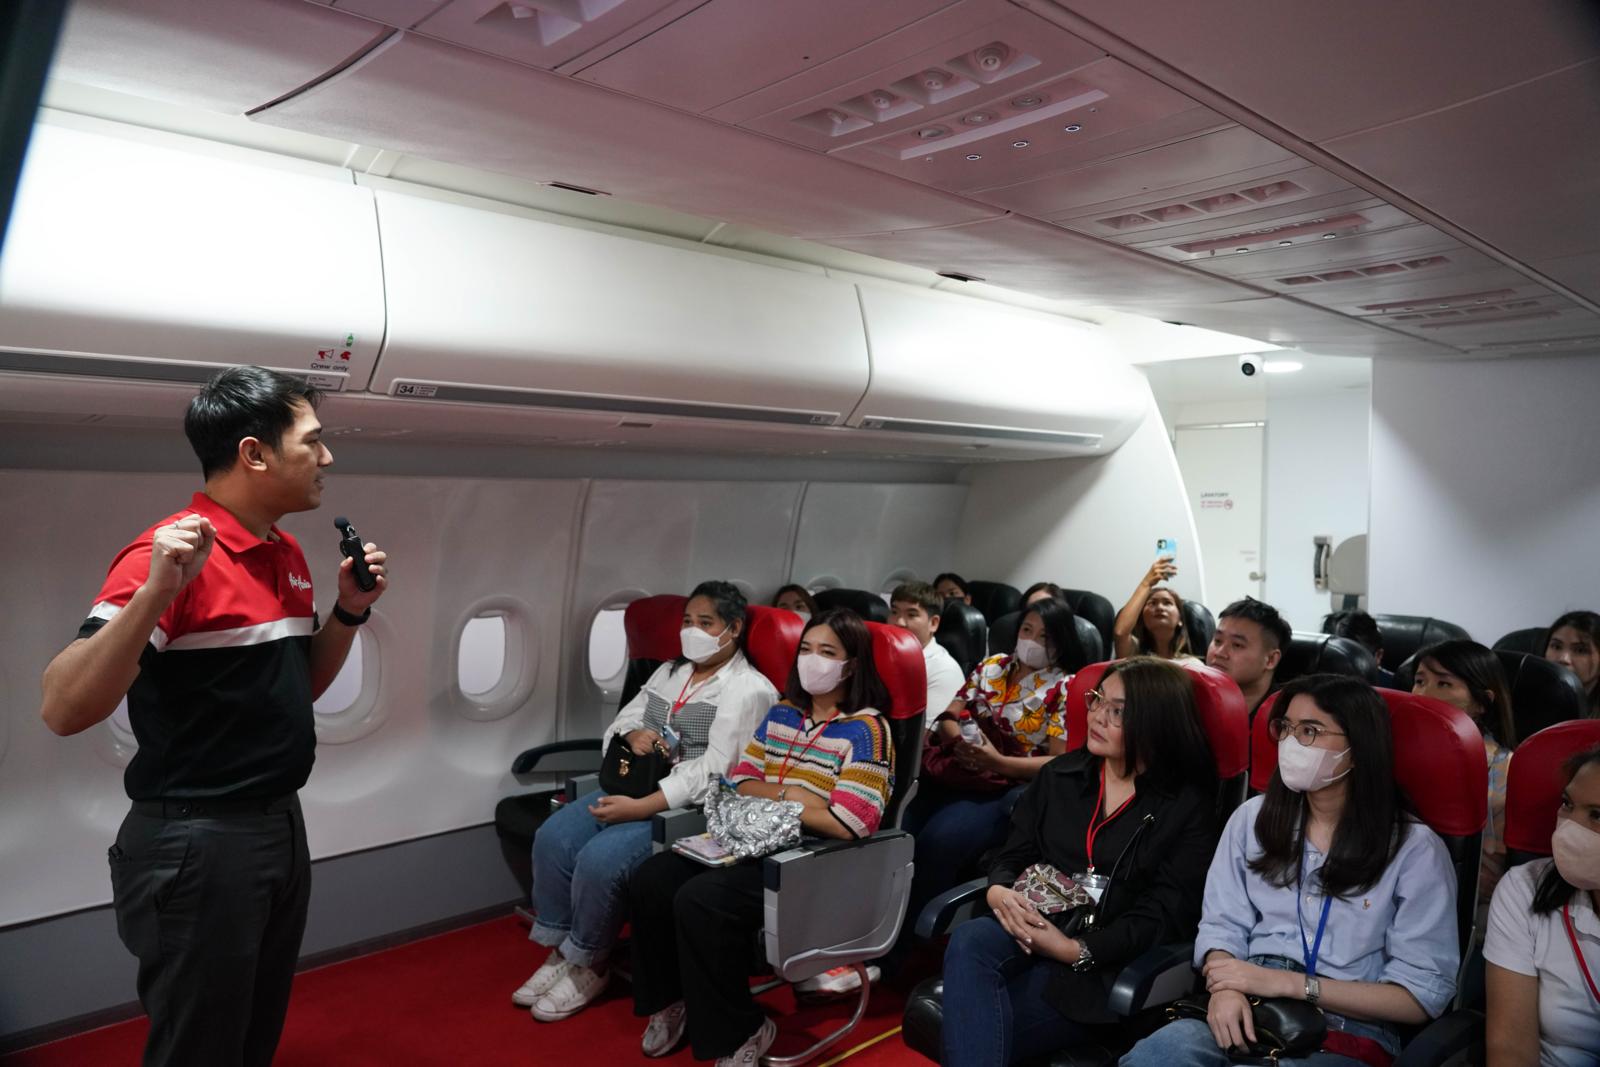 5 บทเรียนสุดสนุกจากการร่วมกิจกรรม “DRILL YOUR PURPOSE BOOTCAMP” เรียนรู้การบริหารจัดการคนสไตล์ AirAsia